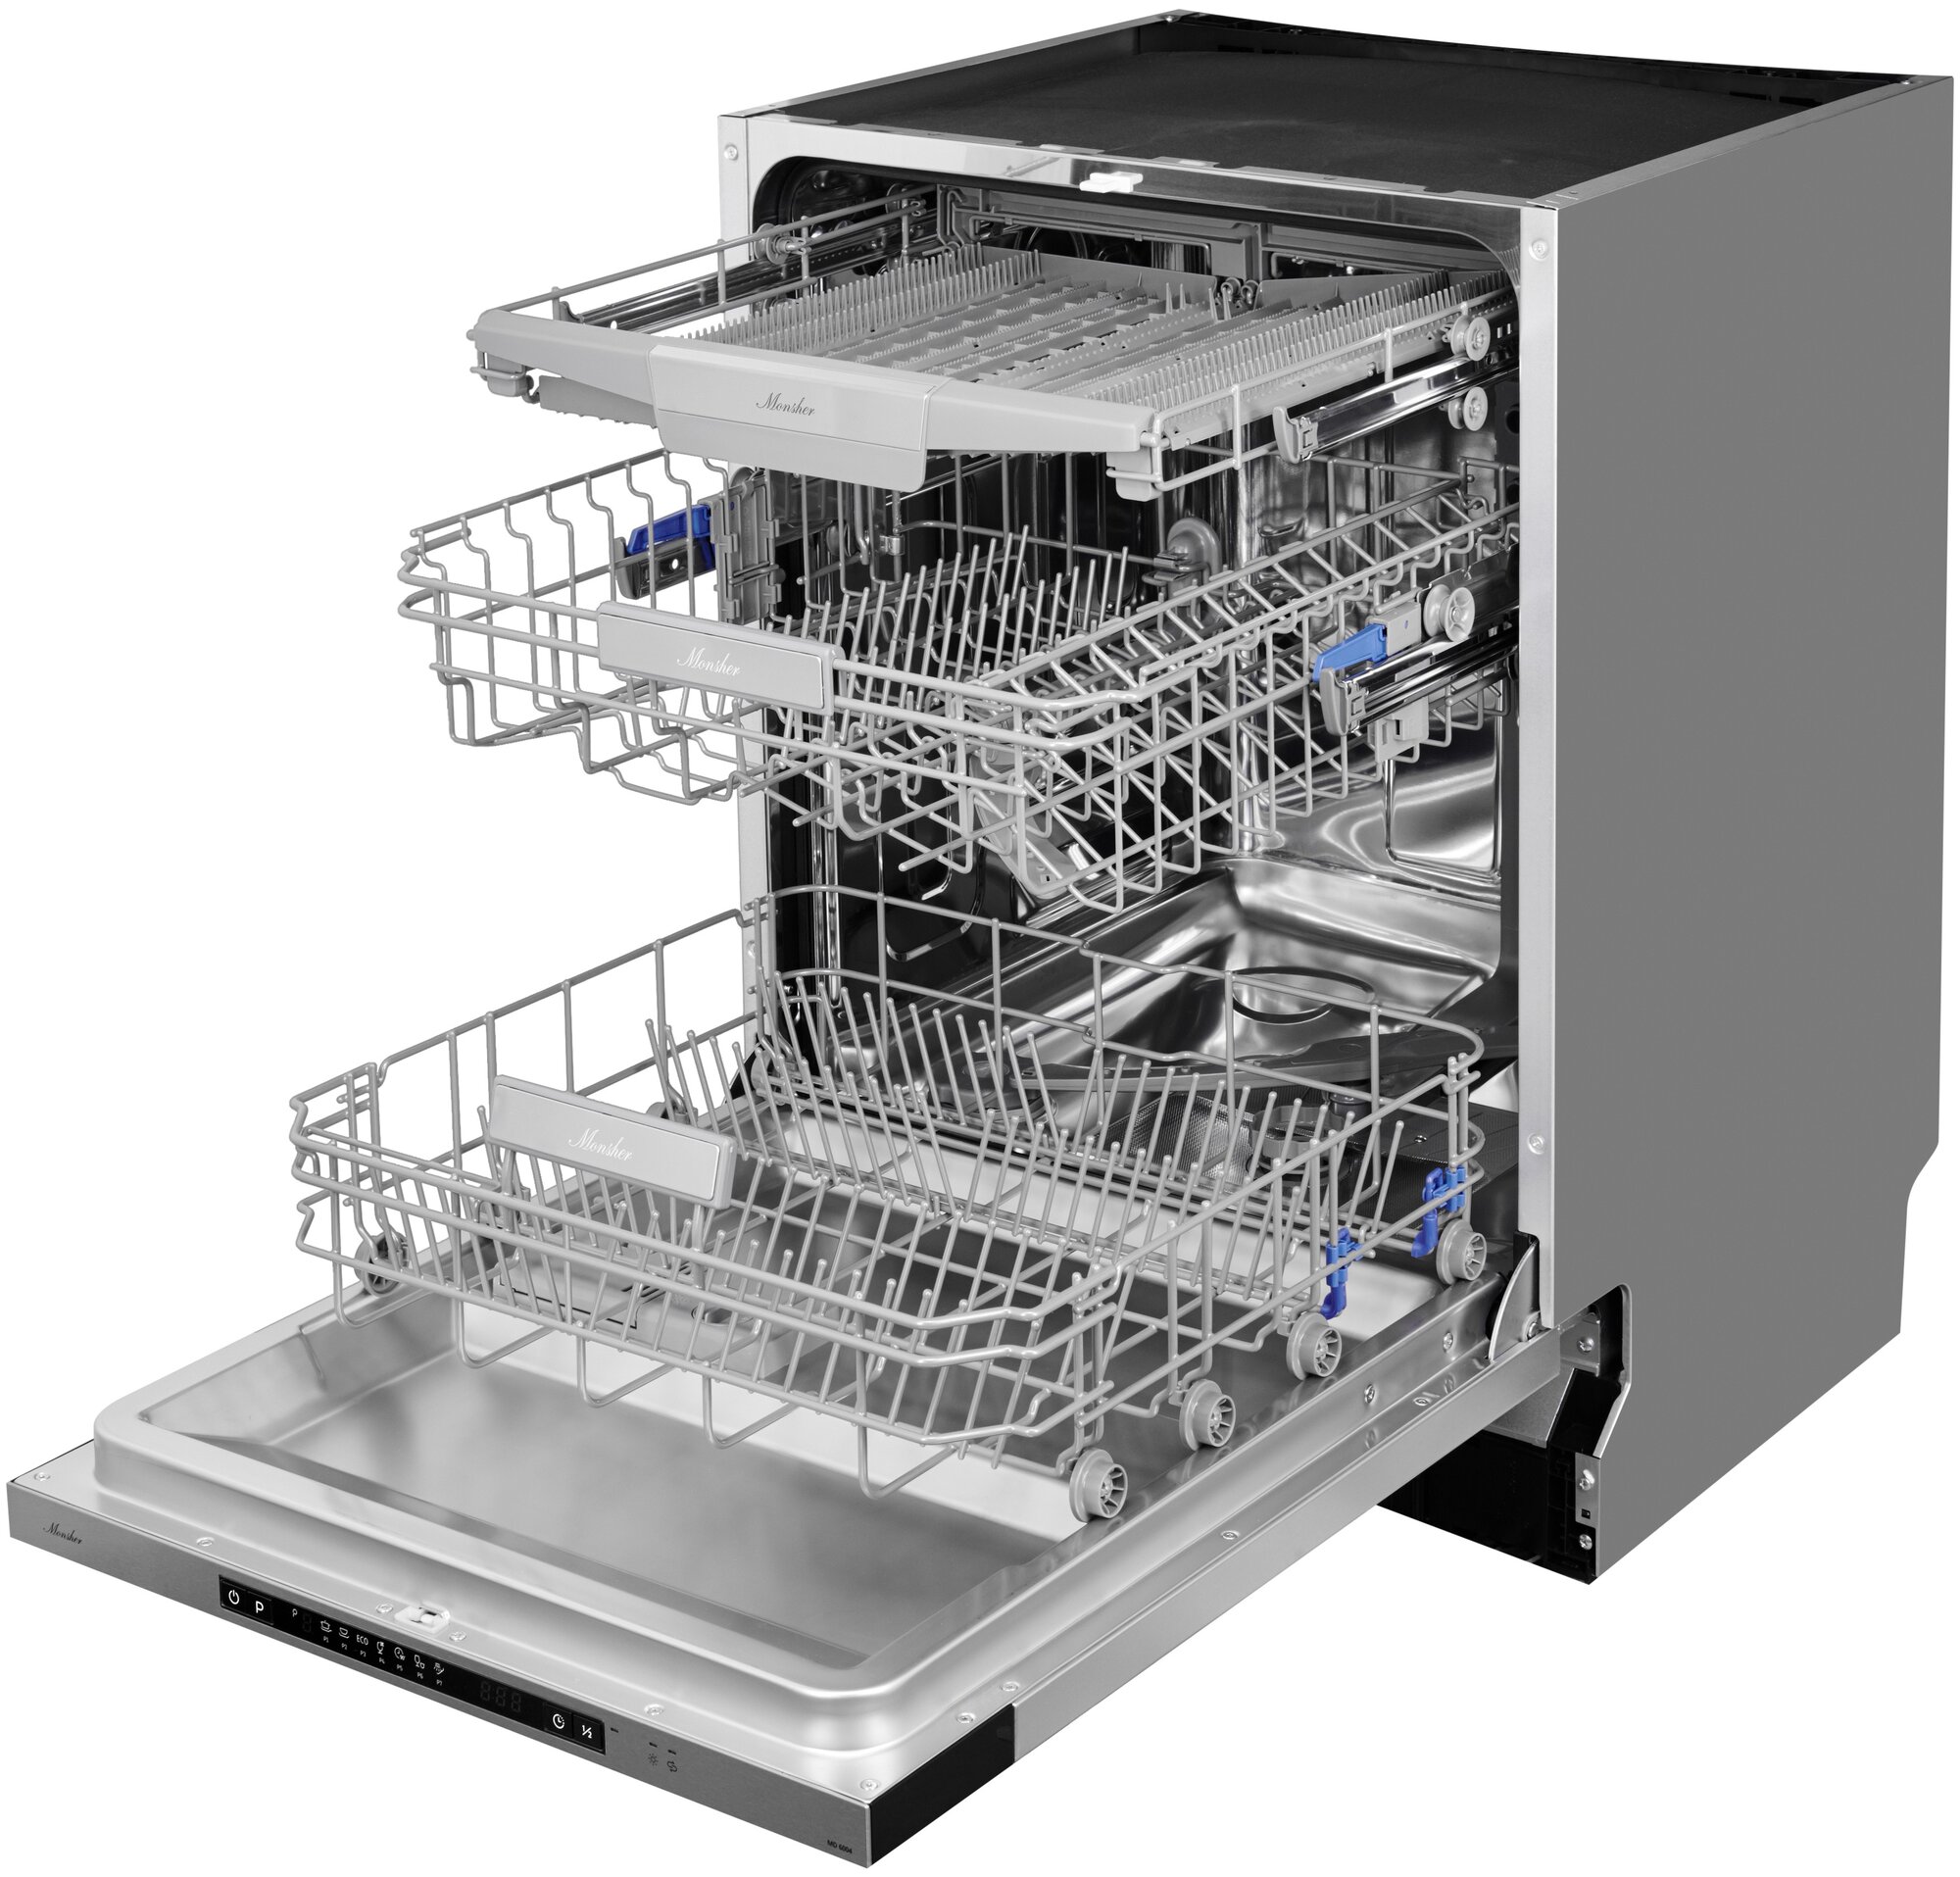 Встраиваемая посудомоечная машина MONSHER MD 6004